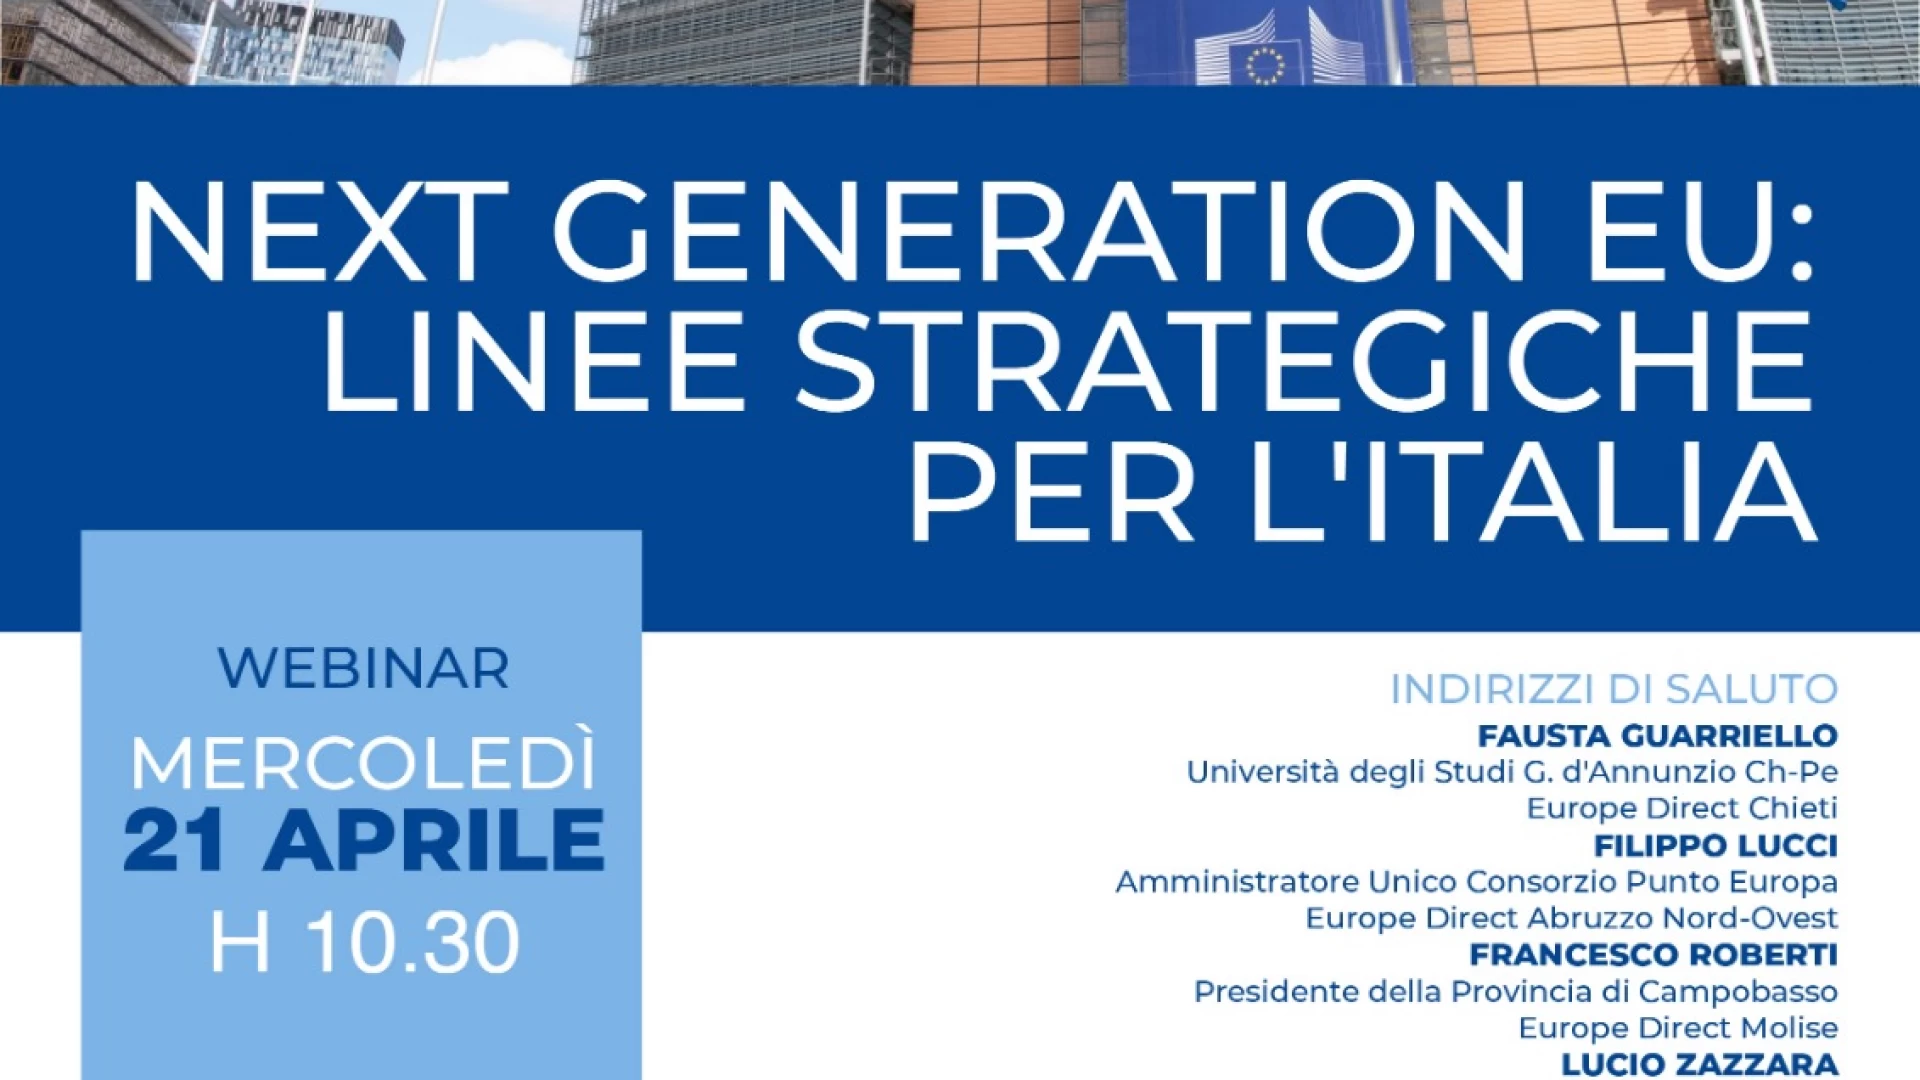 Next Generation EU: Linee strategiche per l’Italia. Il webinar in programma mercoledì 21 aprile.